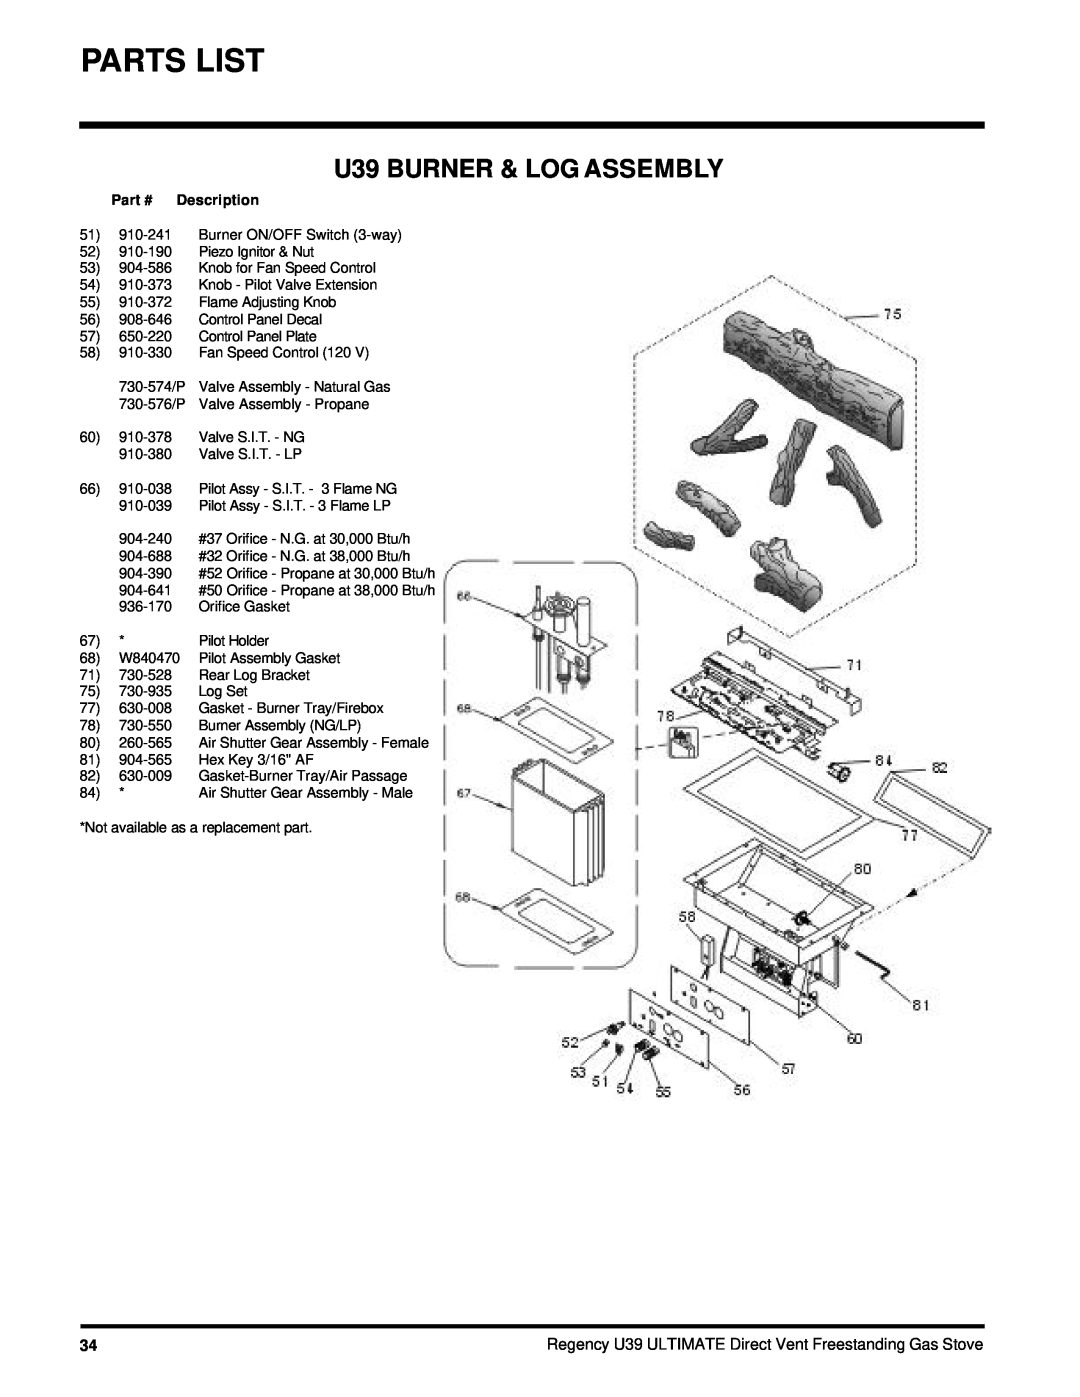 Regency U39-LP, U39-NG installation manual U39 BURNER & LOG ASSEMBLY, Part # Description 